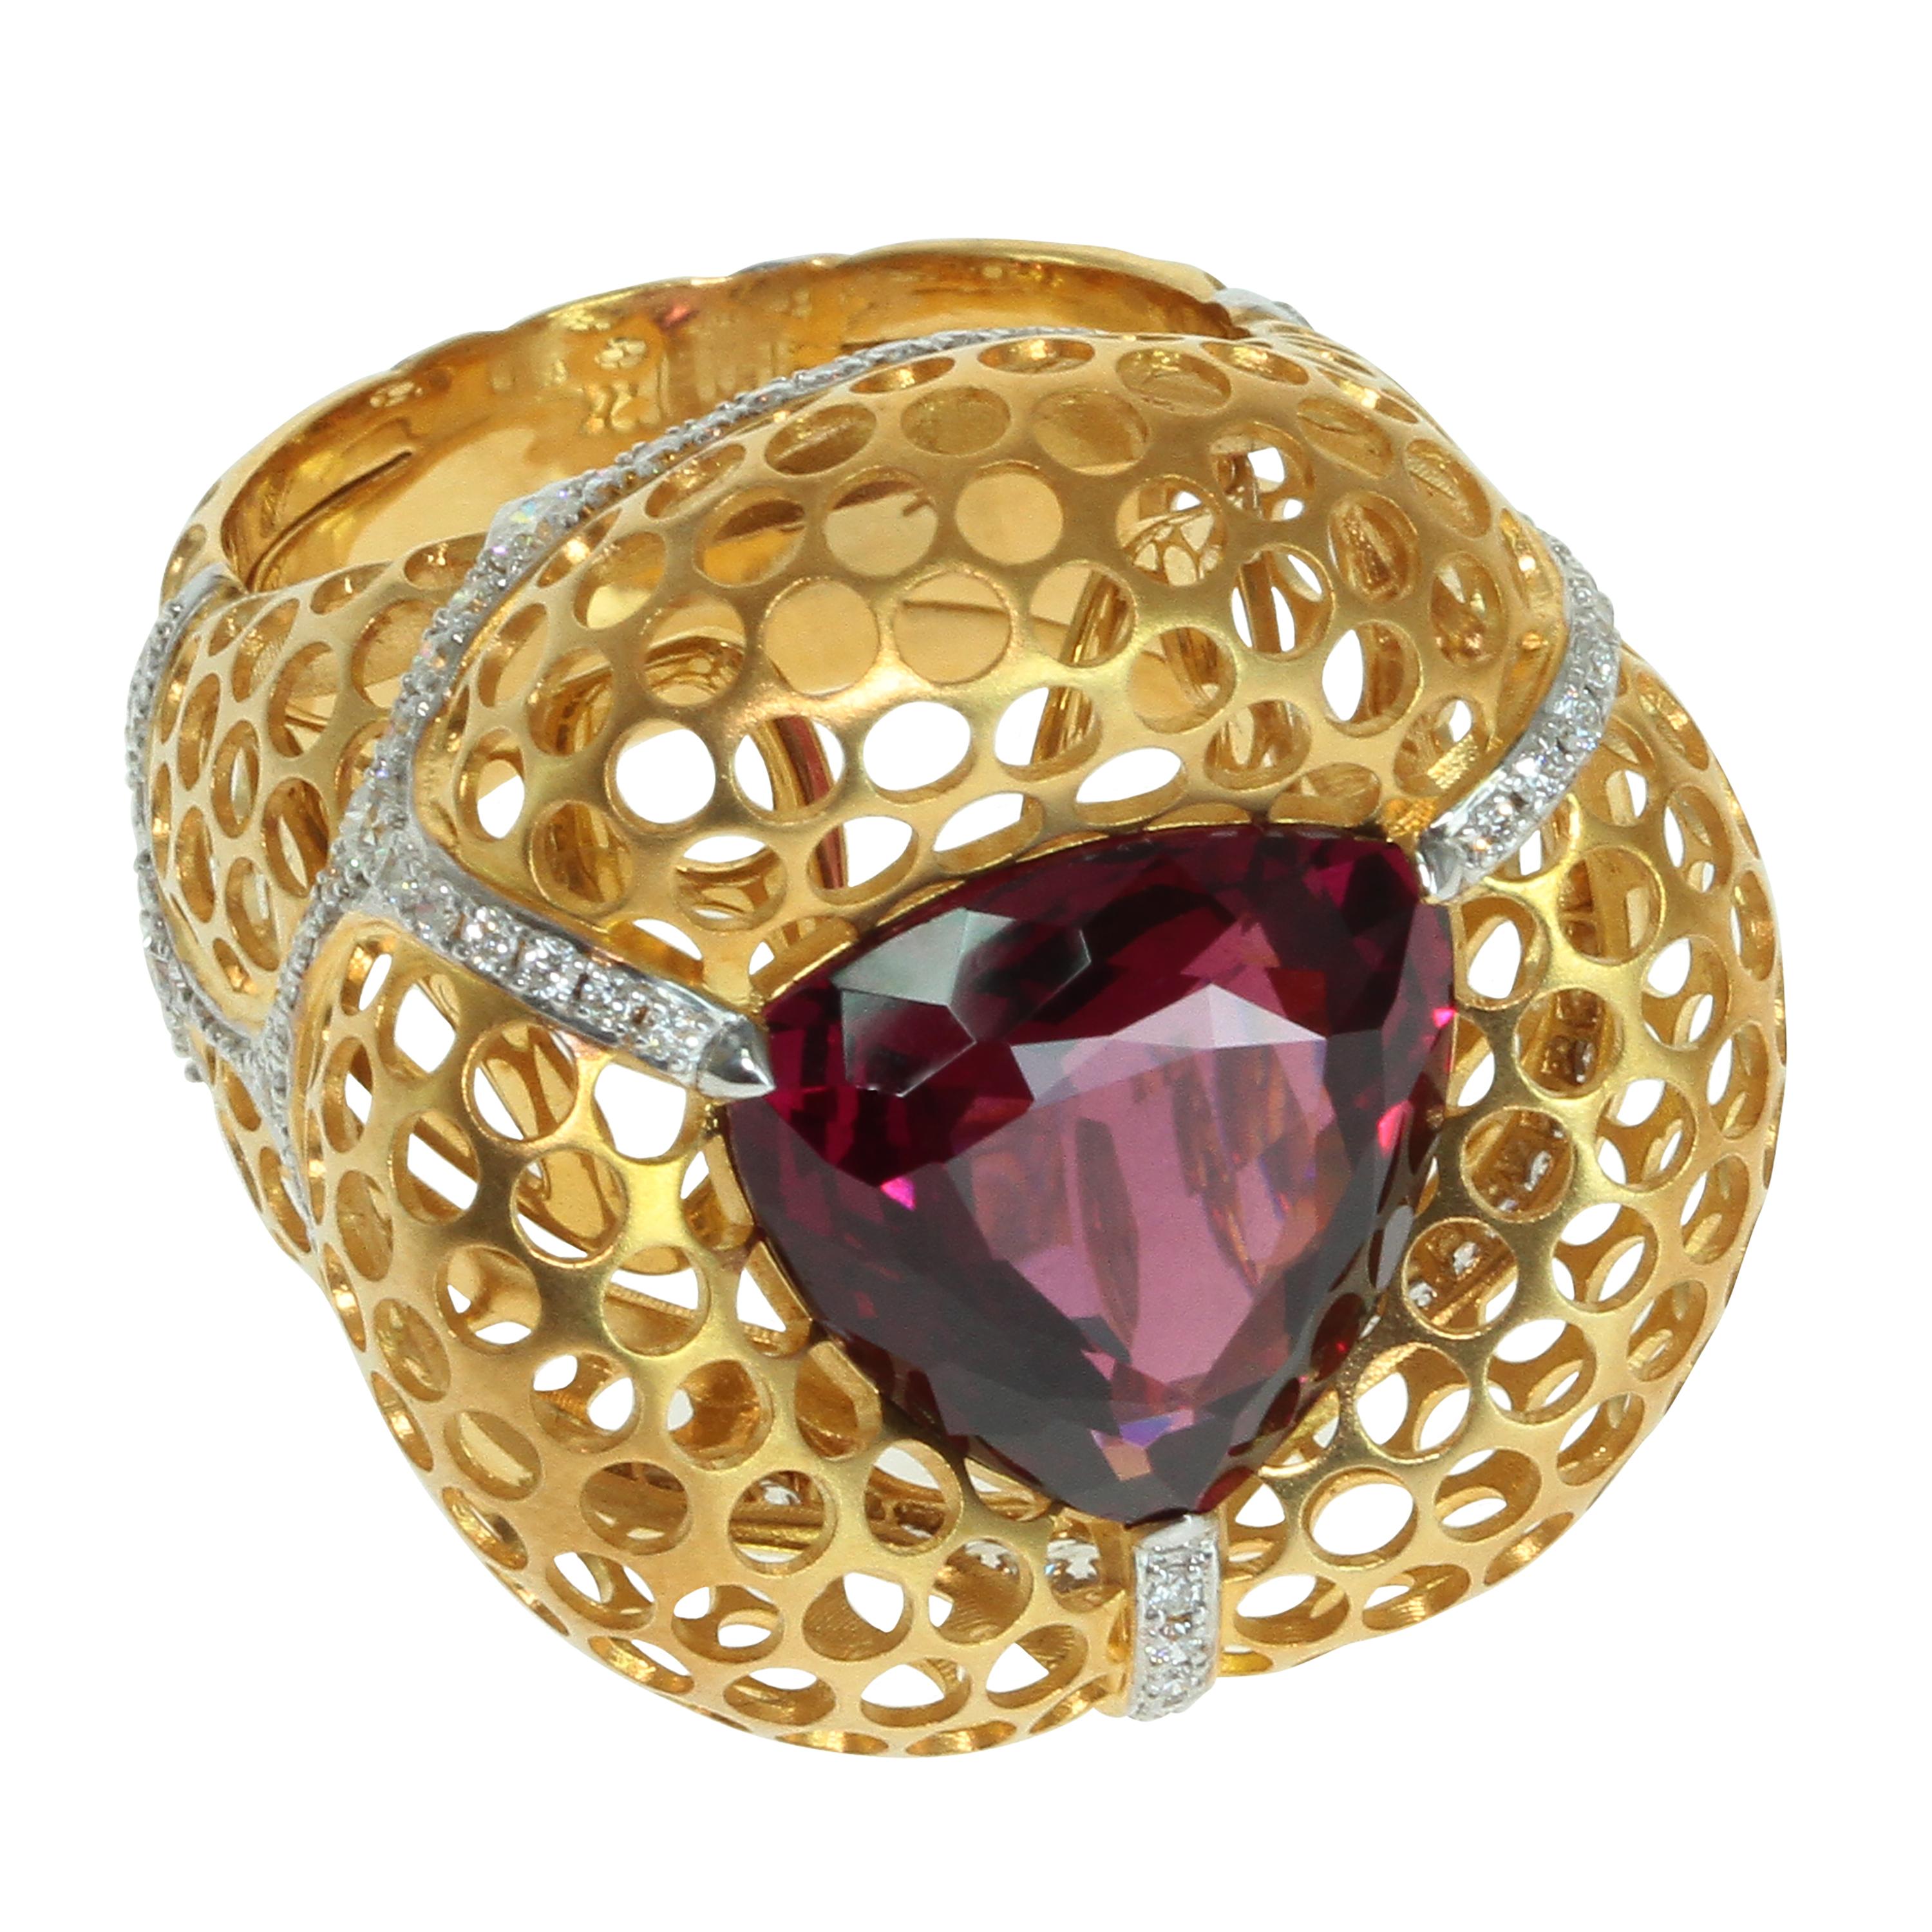 Rhodolith Granat 8,22 Karat, Diamanten 18 Karat Gelbgold Ring
Haben Sie schon einmal Schwalbennester gesehen? Es sind viele kleine Löcher in den Felsen. Unsere Designer haben beschlossen, diese Idee in diesem spektakulären Ring zu verwirklichen. 
Im